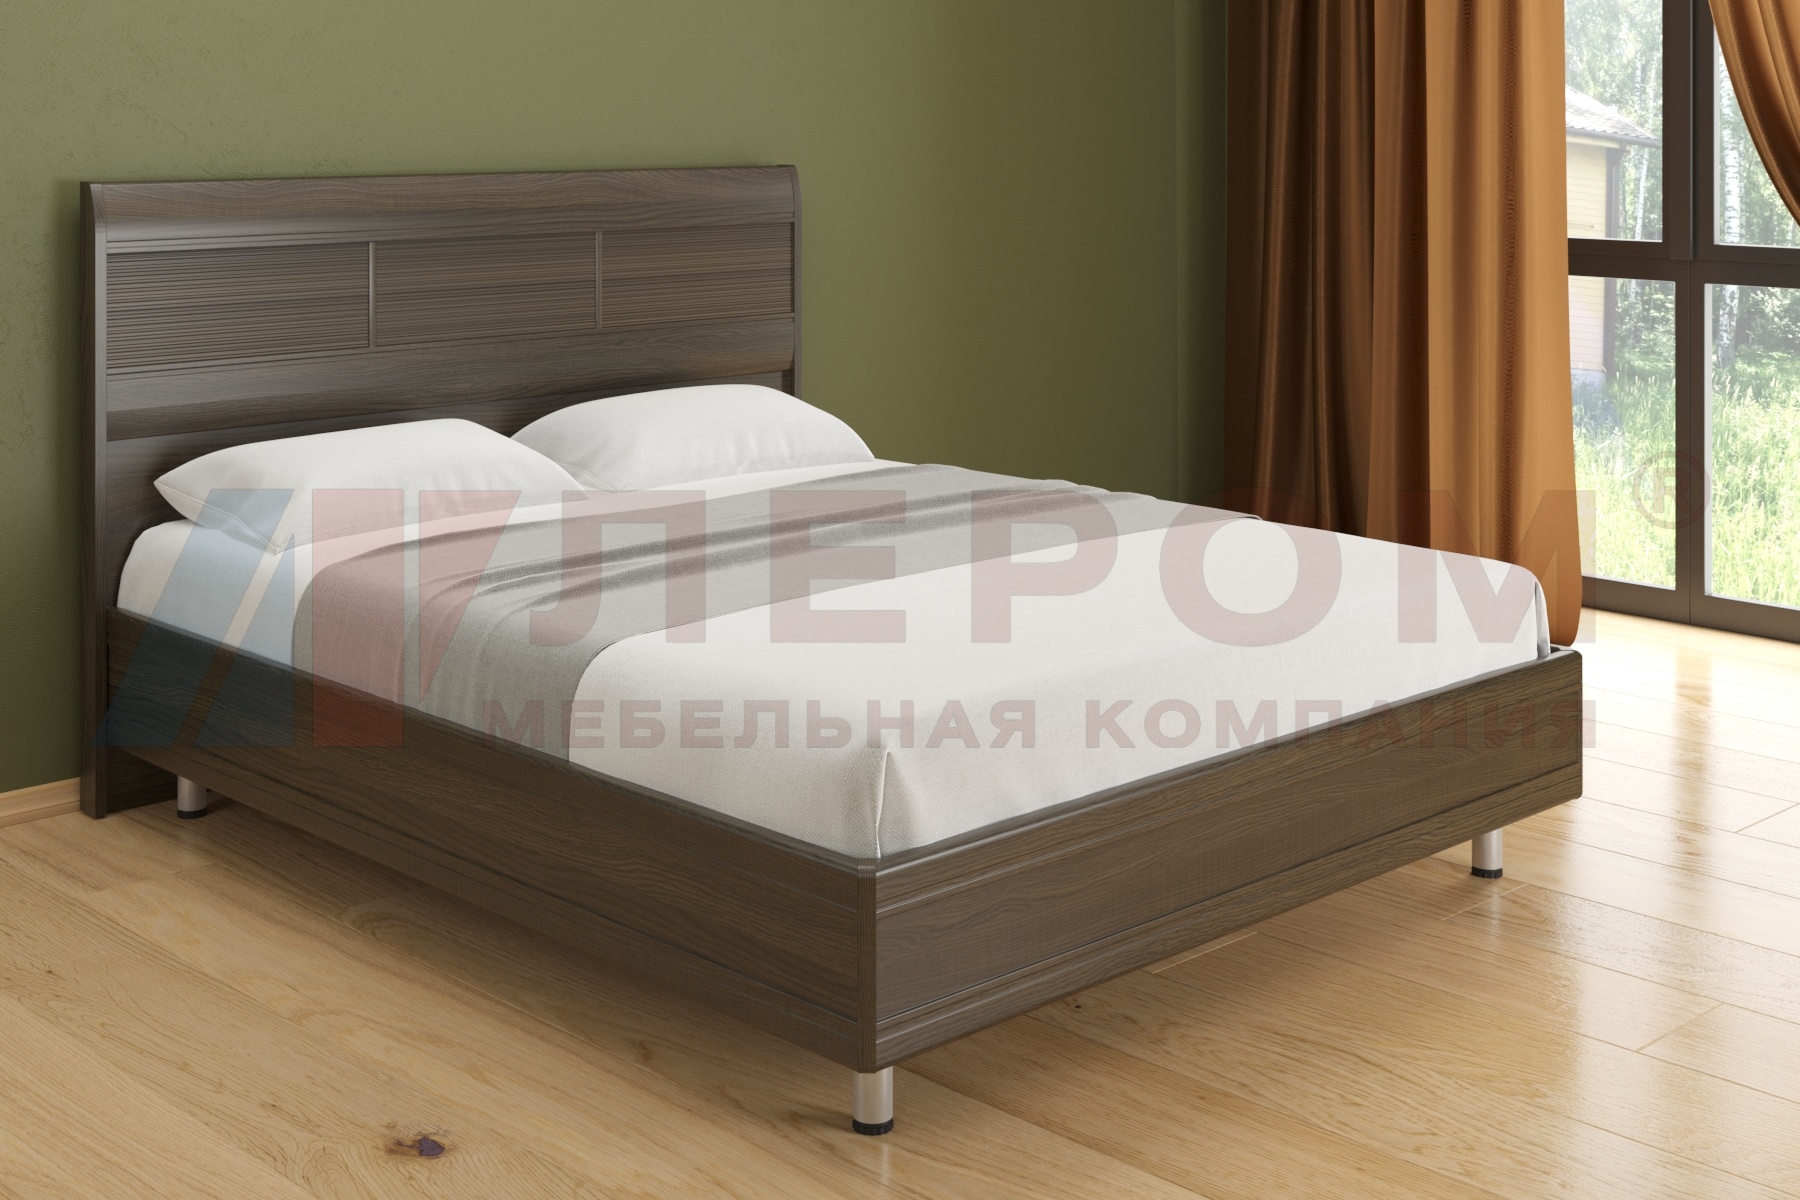 КР-2804 кровать (1.8*2,0)